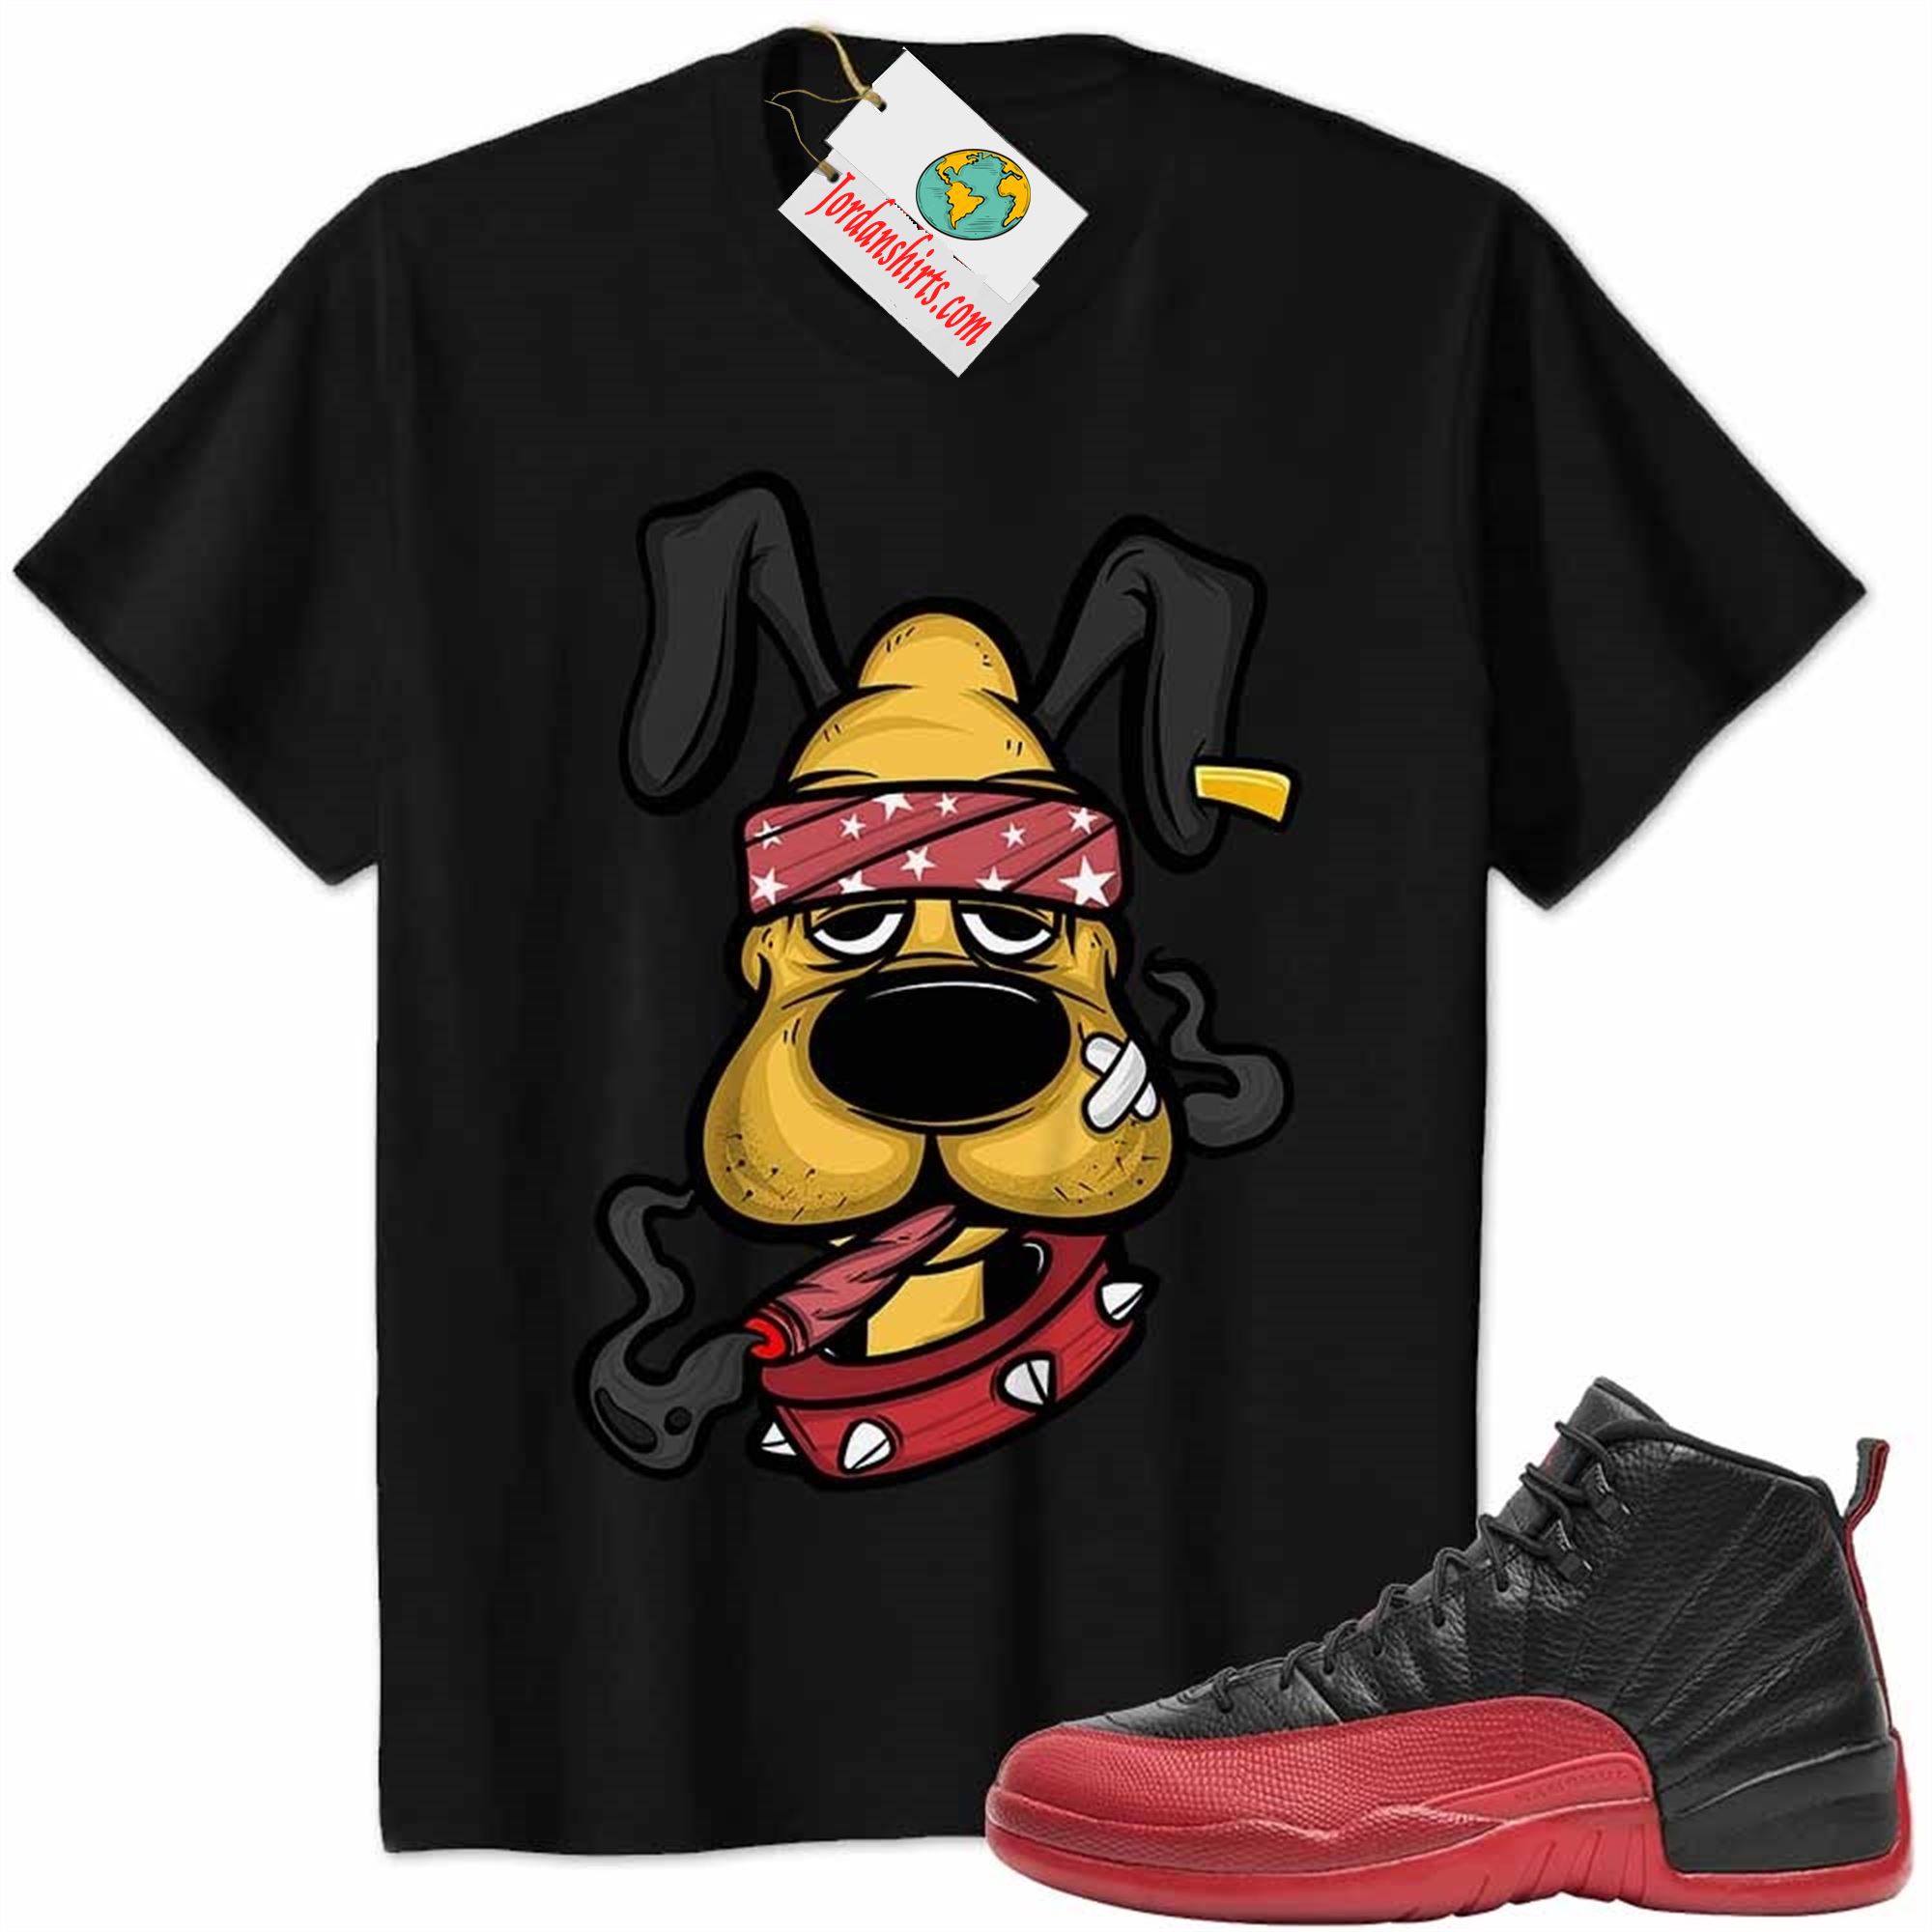 Jordan 12 Shirt, Gangster Pluto Smoke Weed Black Air Jordan 12 Flu Game 12s Size Up To 5xl